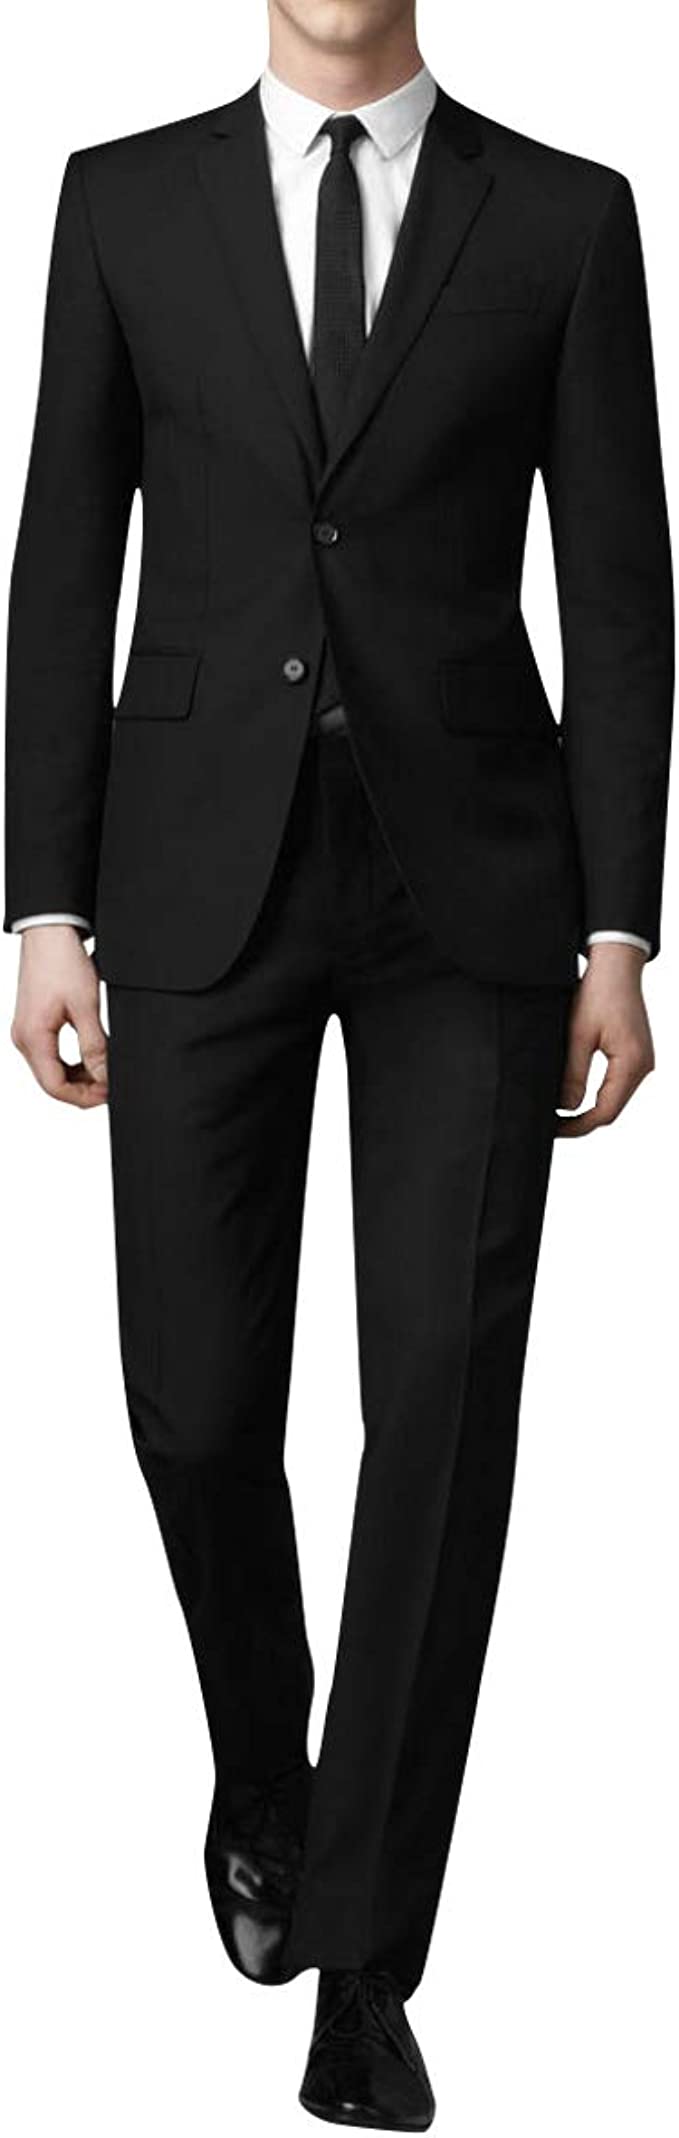 スーツ メンズ 上下セット 二つボタン ビジネススーツ スリム 大きいサイズ S-4XL